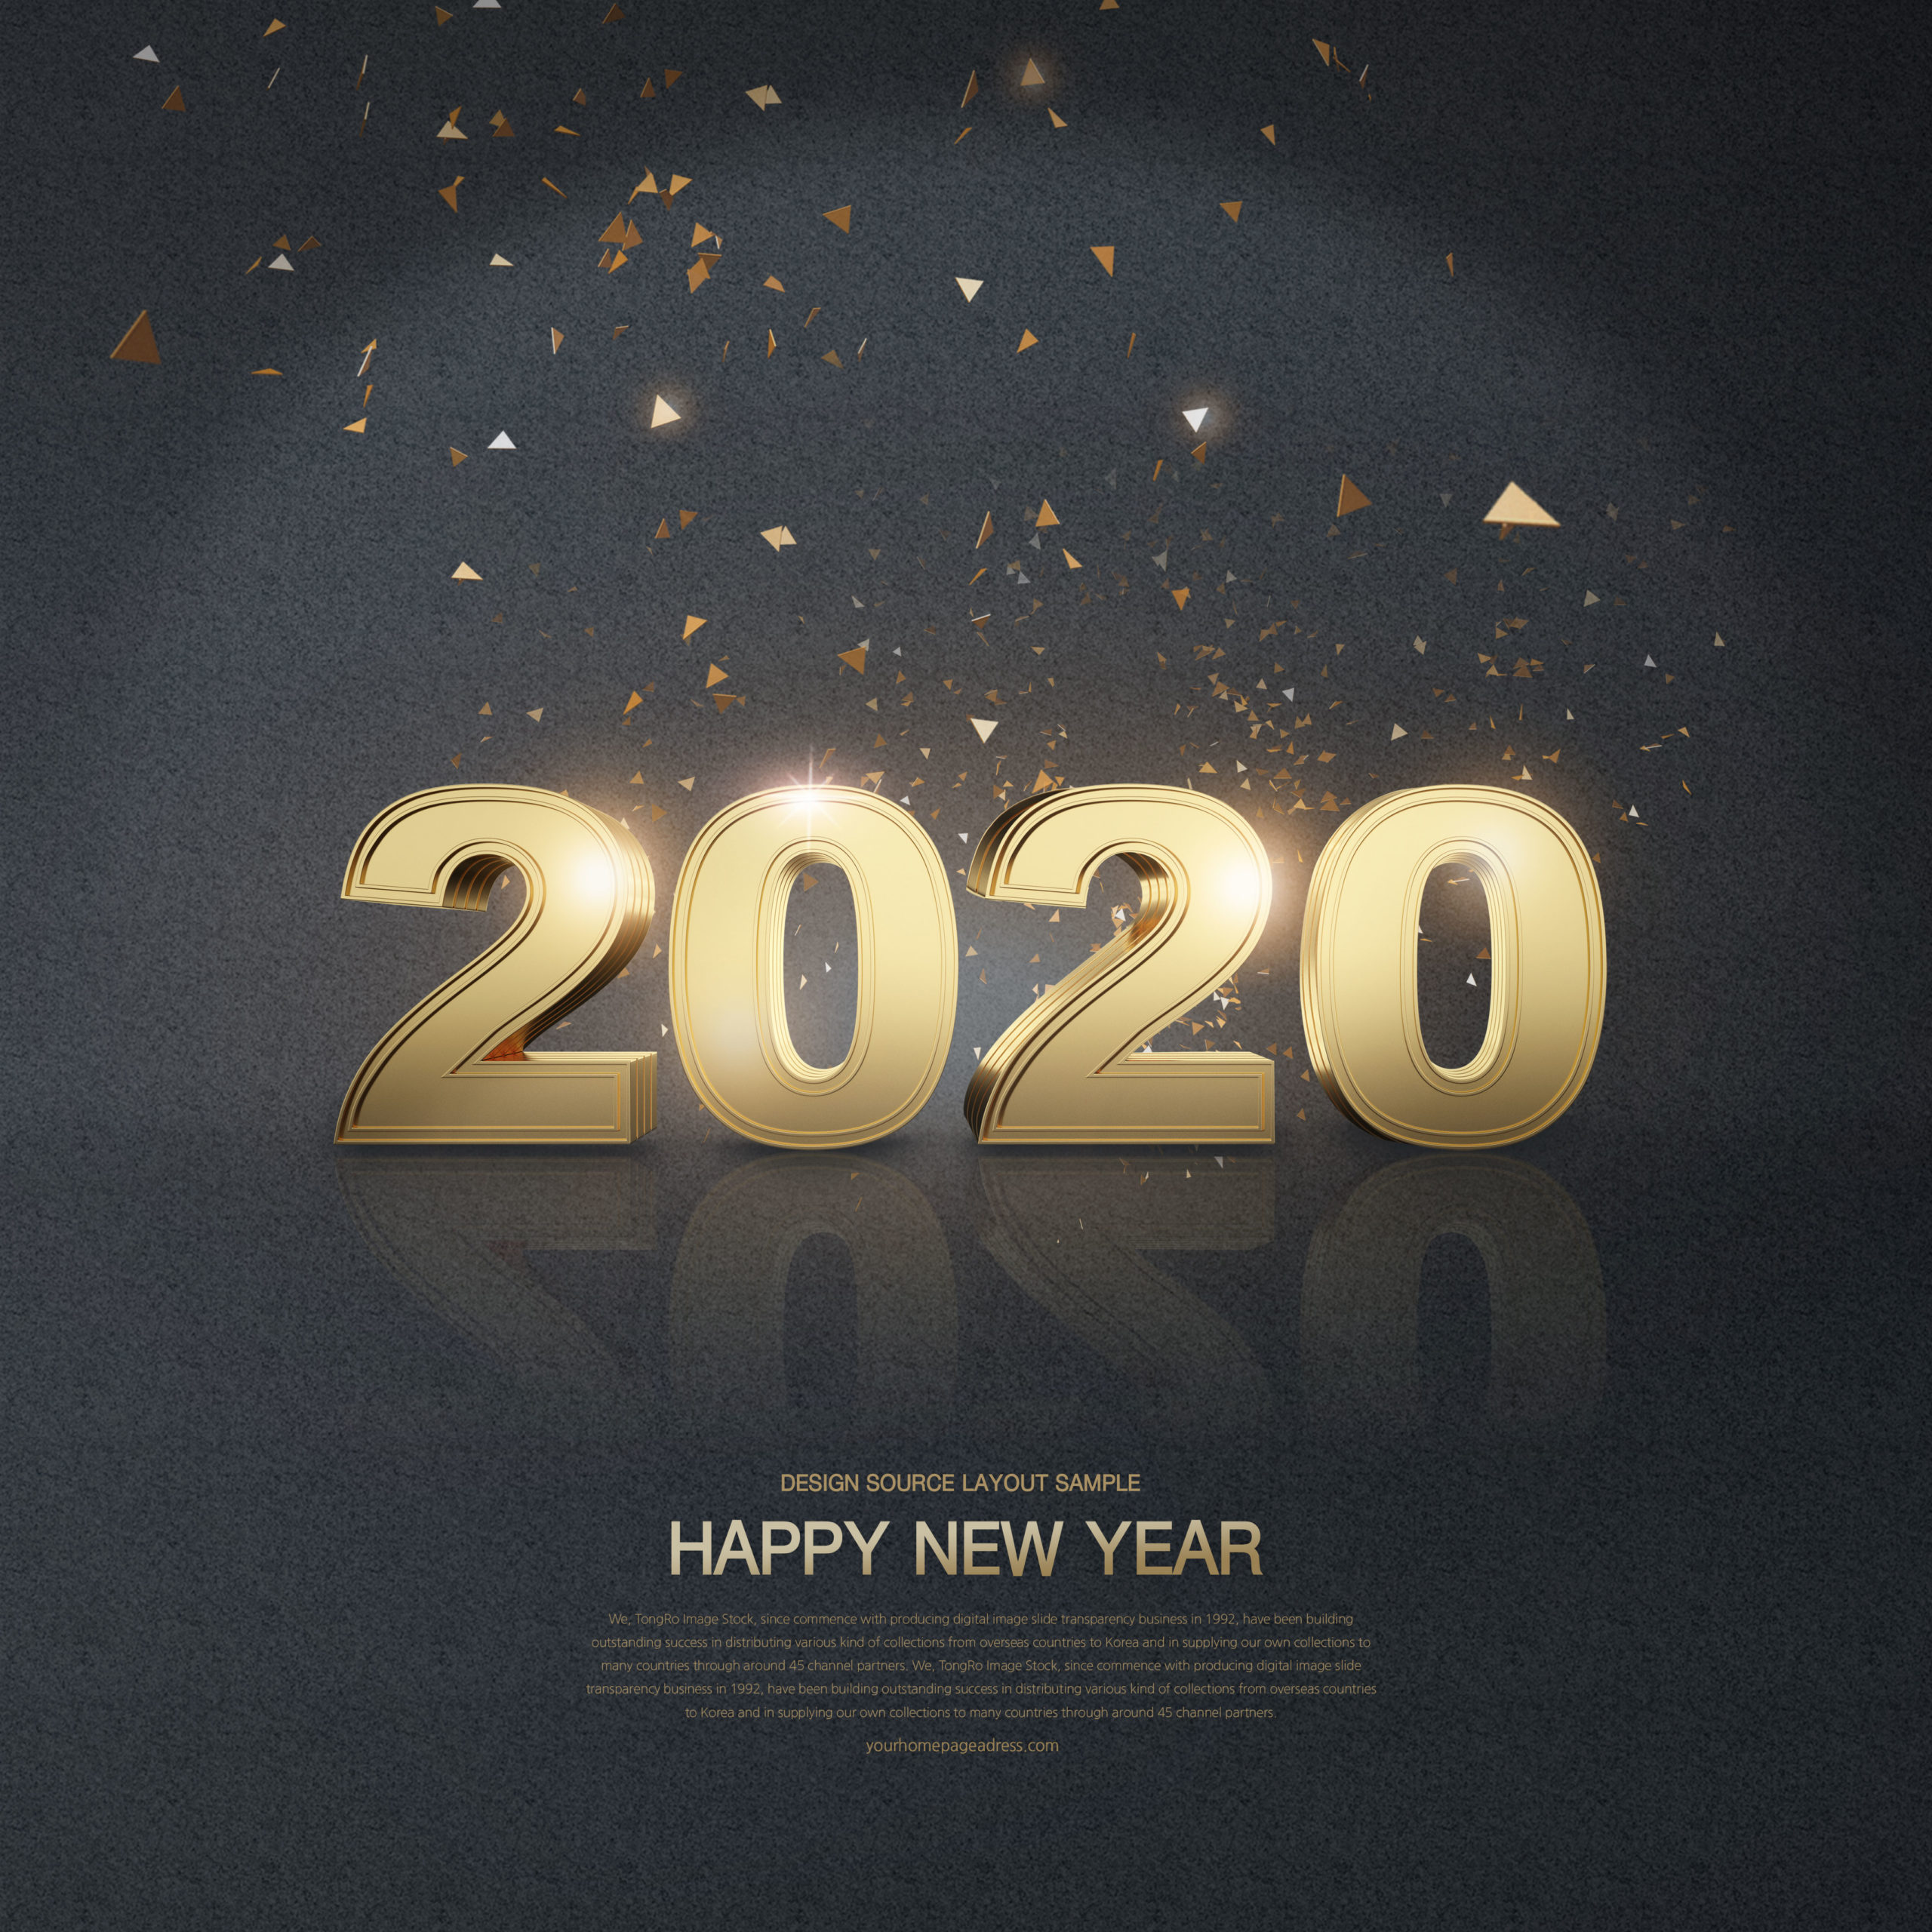 豪华金色2020新年快乐字体海报/贺卡/传单设计素材合集插图